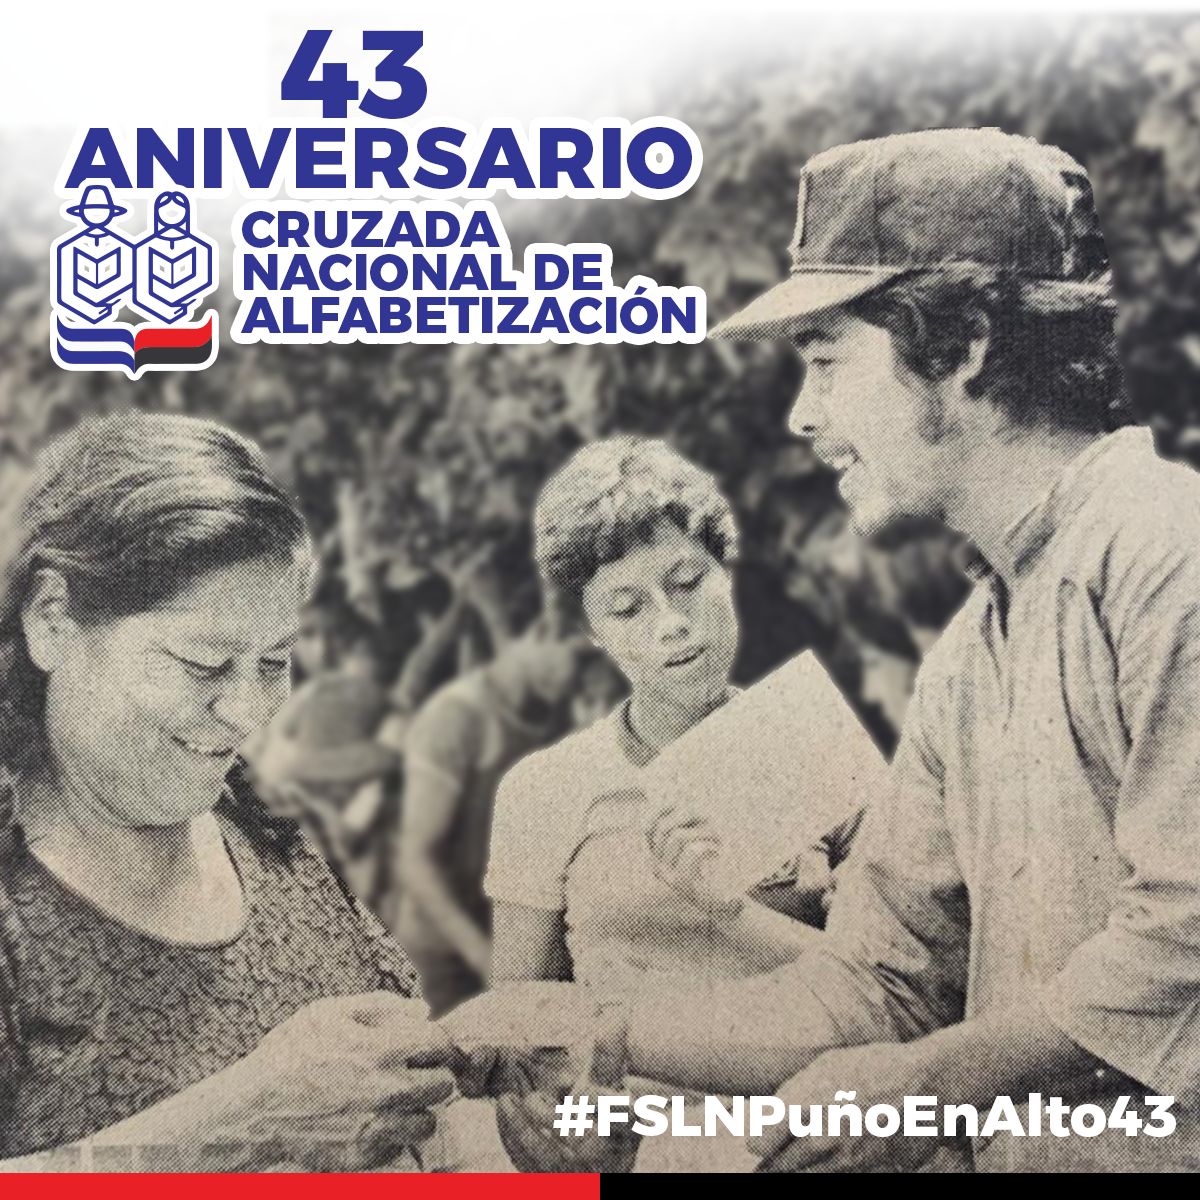 #23Marzo

Celebramos el 43 Aniversario de la Crazada Nacional de Alfabetizacion en Nuestra #Nicaragua  y seguimos siempre mas Alla
#FSLNPuñoEnAlto43
#TropaSandinista
@FcoRosales78 @jbrisol @JDOSNICA @corpav_m @maritalr19 @somarriba1979 @Frances_Rivera2 @Joel190779 @LuisaOr91